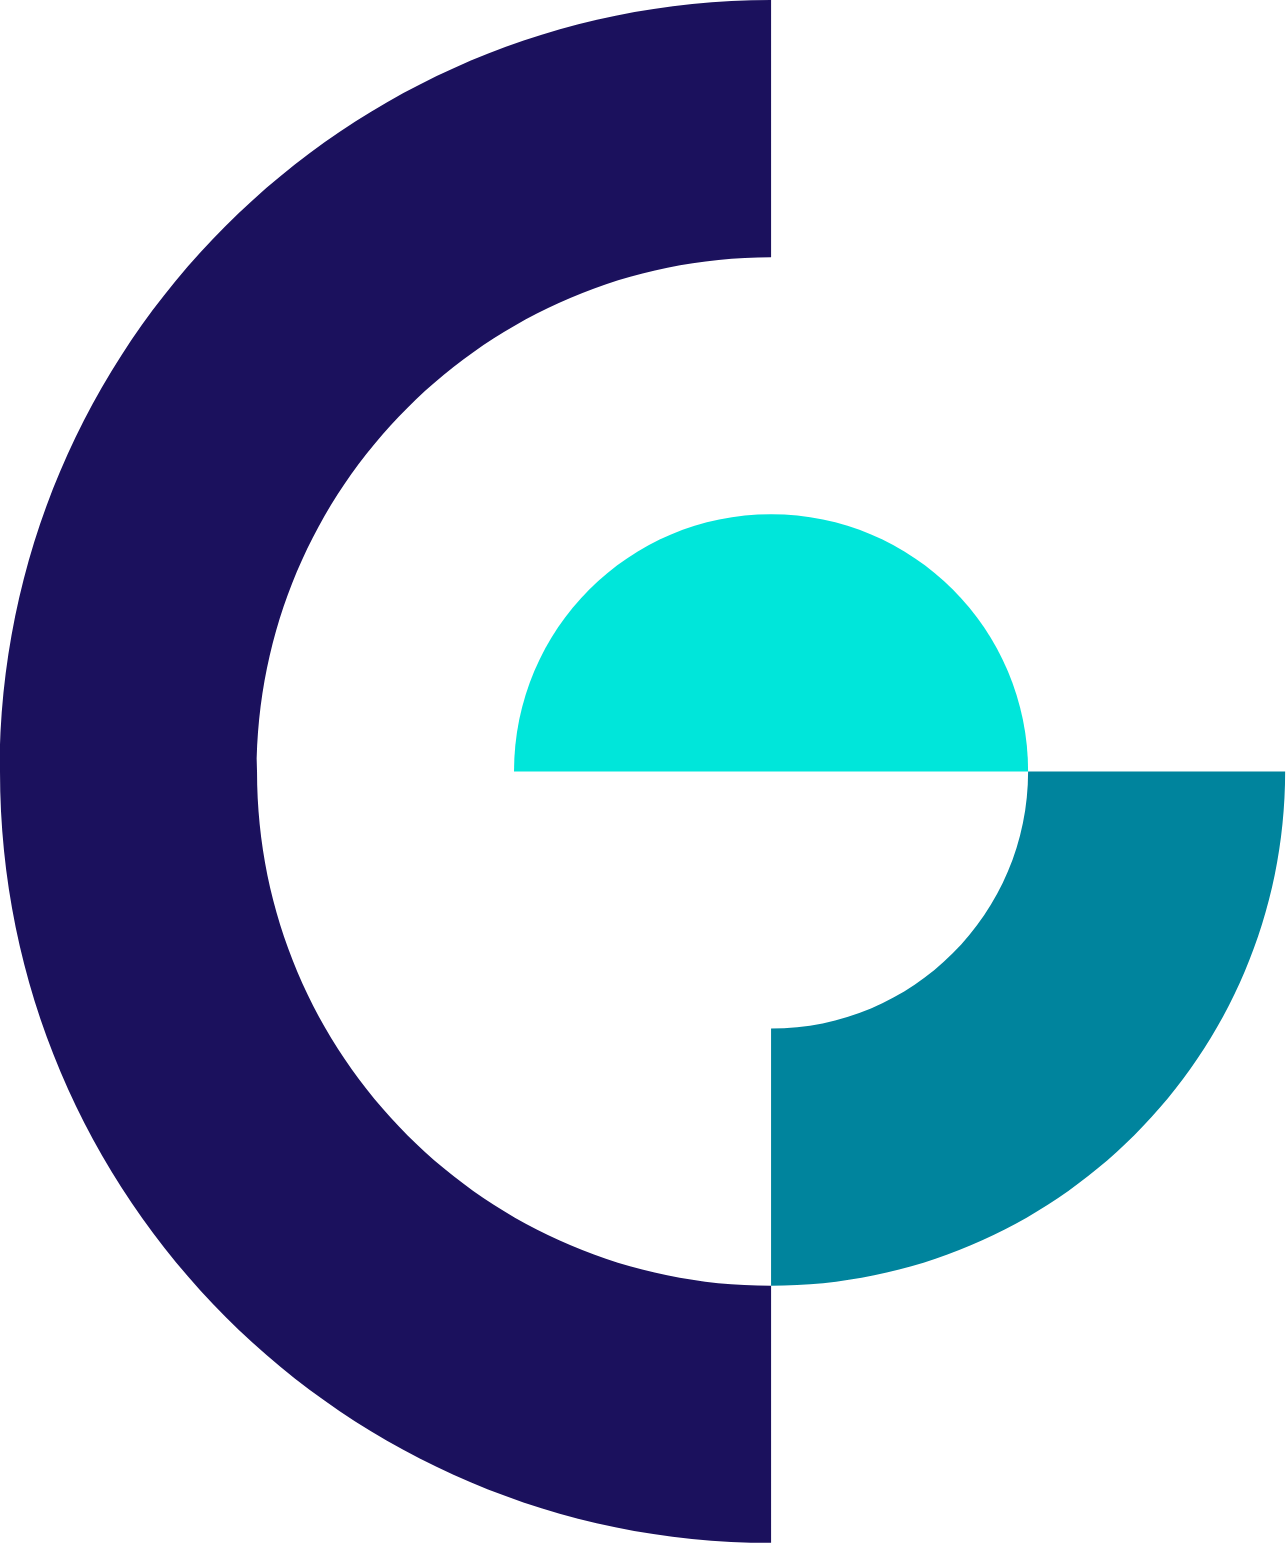 Gilat Satellite Networks logo (transparent PNG)